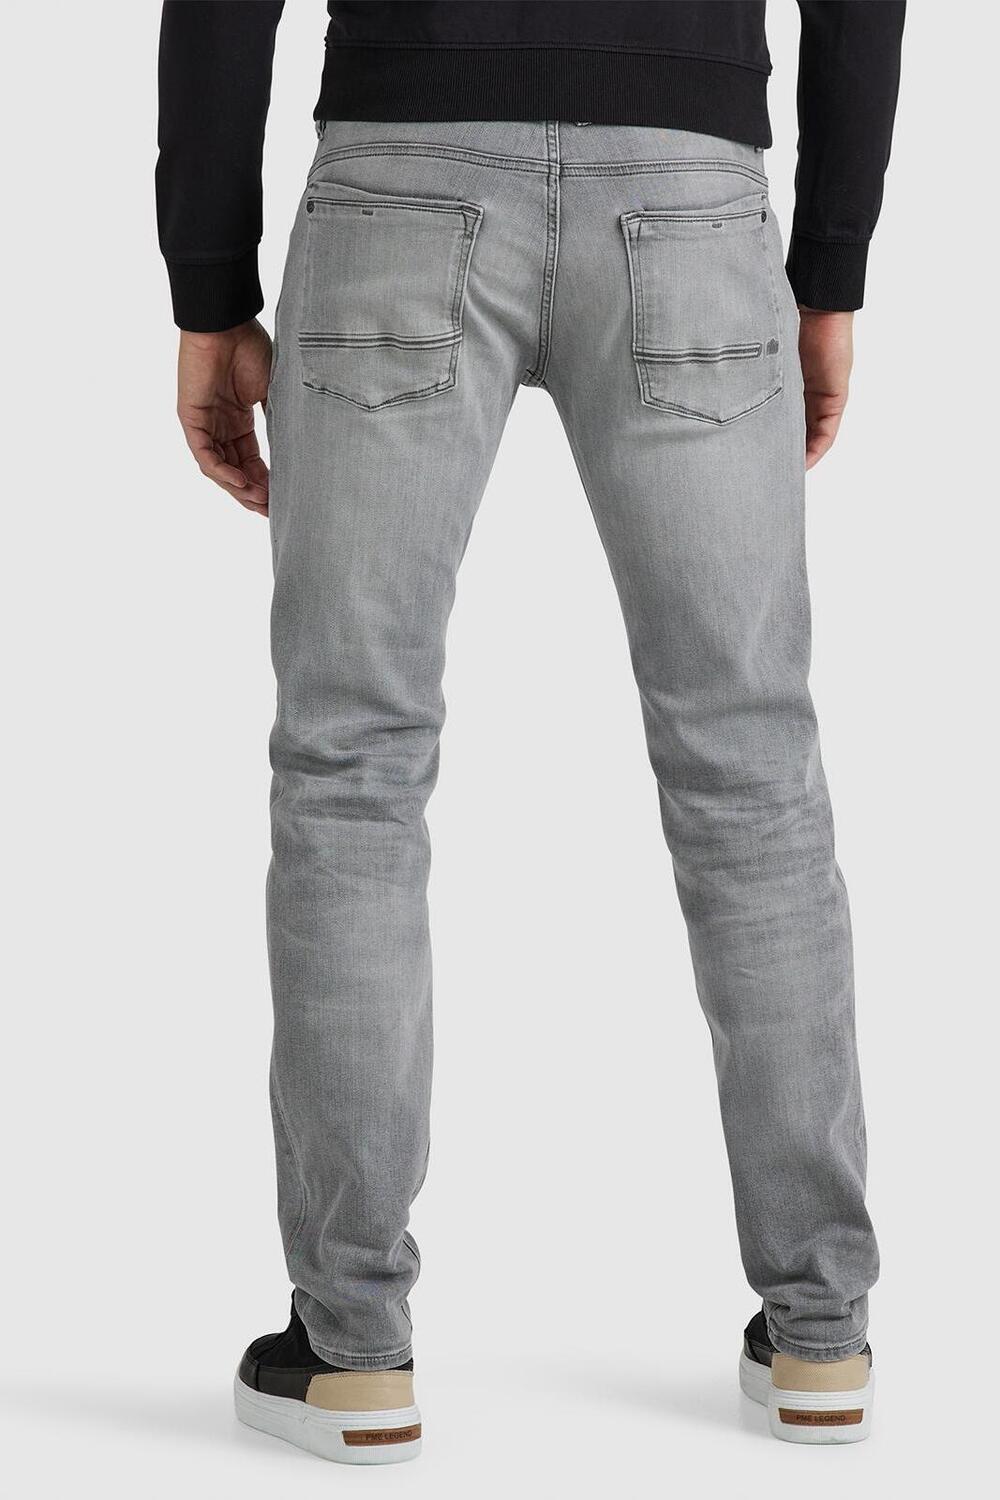 maandelijks Binnen pellet commander 3 0 jeans ptr180 pme legend jeans grey denim comfort